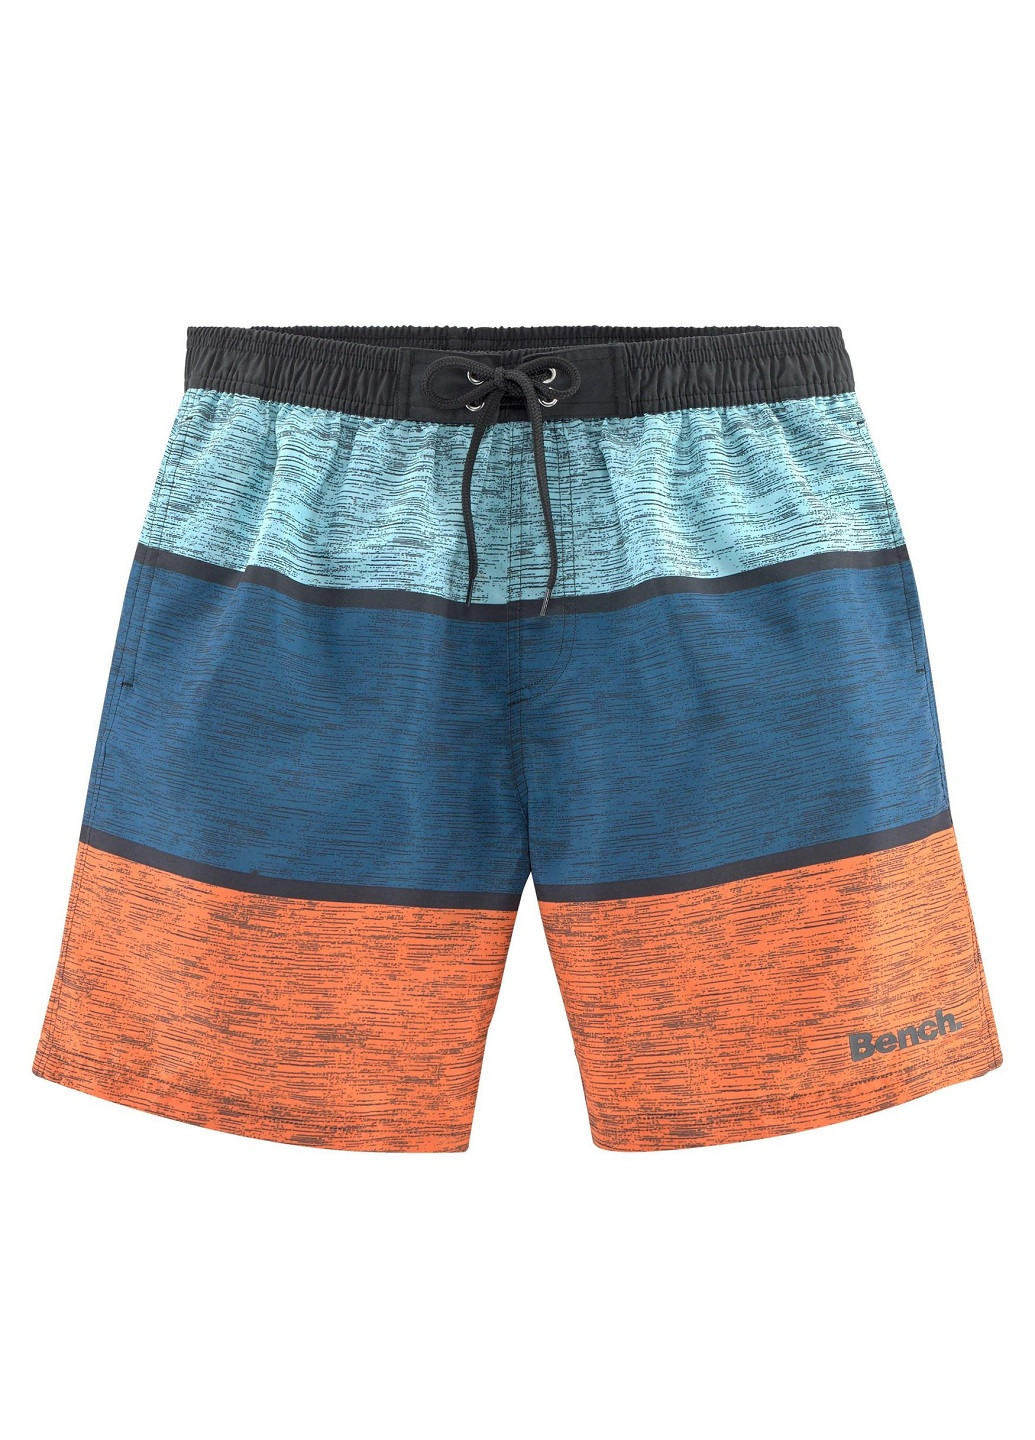 Мужские оранжевые пляжные купальные шорты Bench